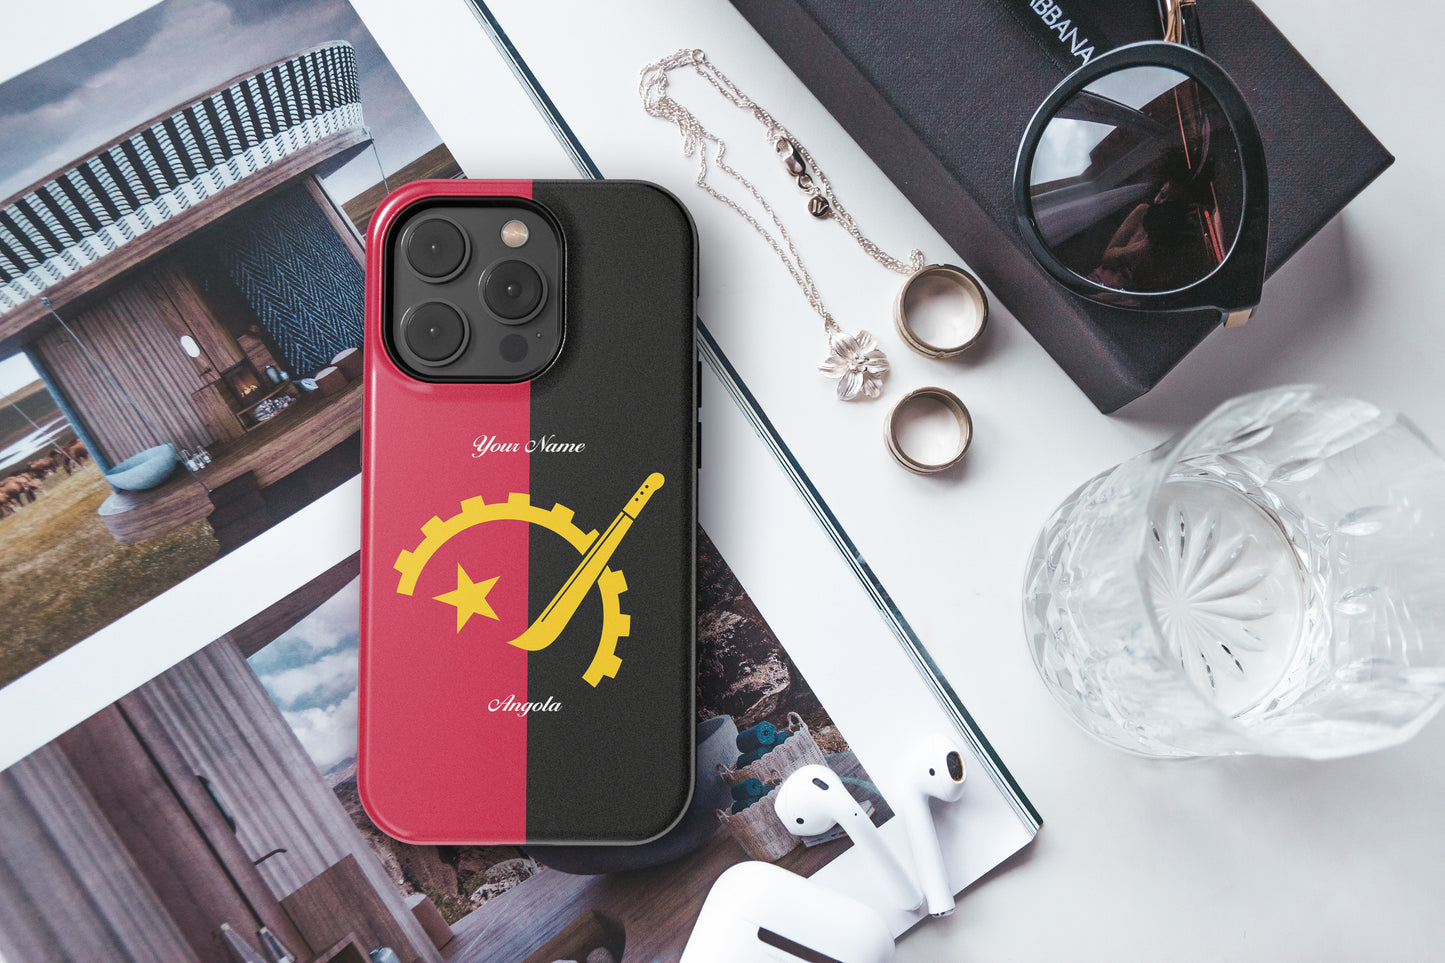 Angola National Emblem - iPhone